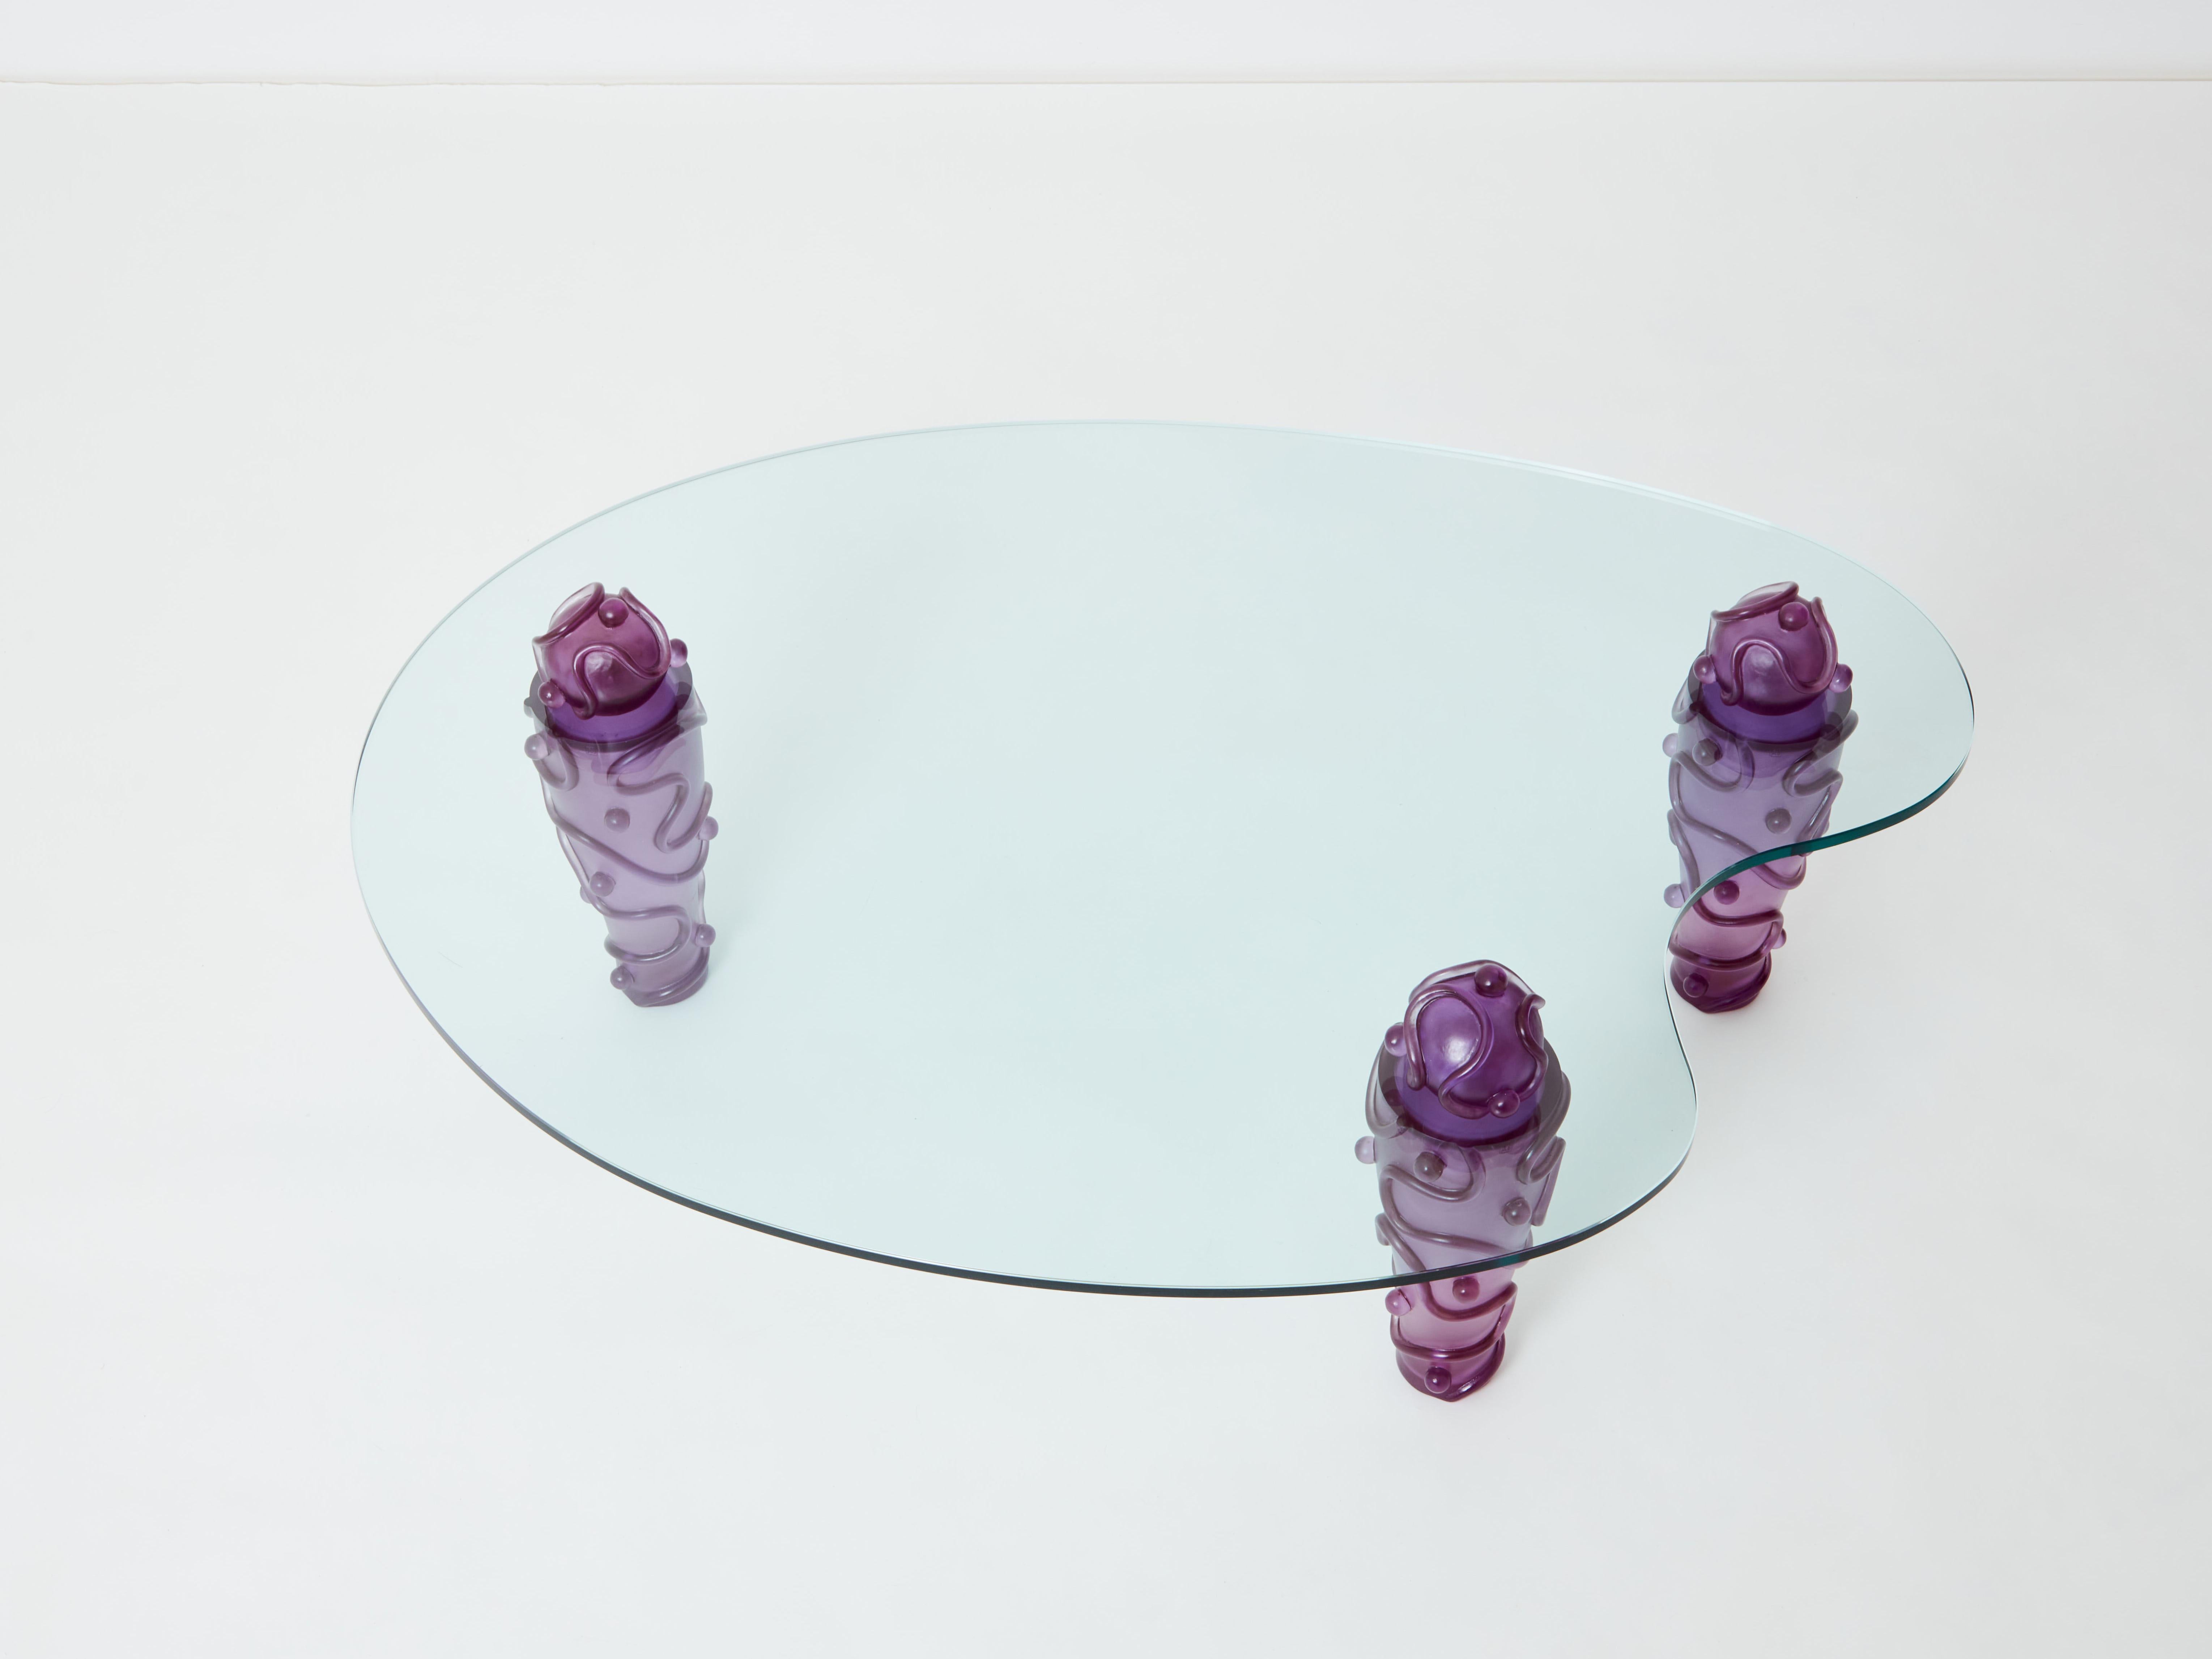 Cette table basse des années 1990 se distingue par sa couleur violette profonde et son design fantaisiste, surtout pour ceux qui pensent que l'expression passionnée de la créativité va de pair avec la décoration d'intérieur. Elizabeth Garouste &